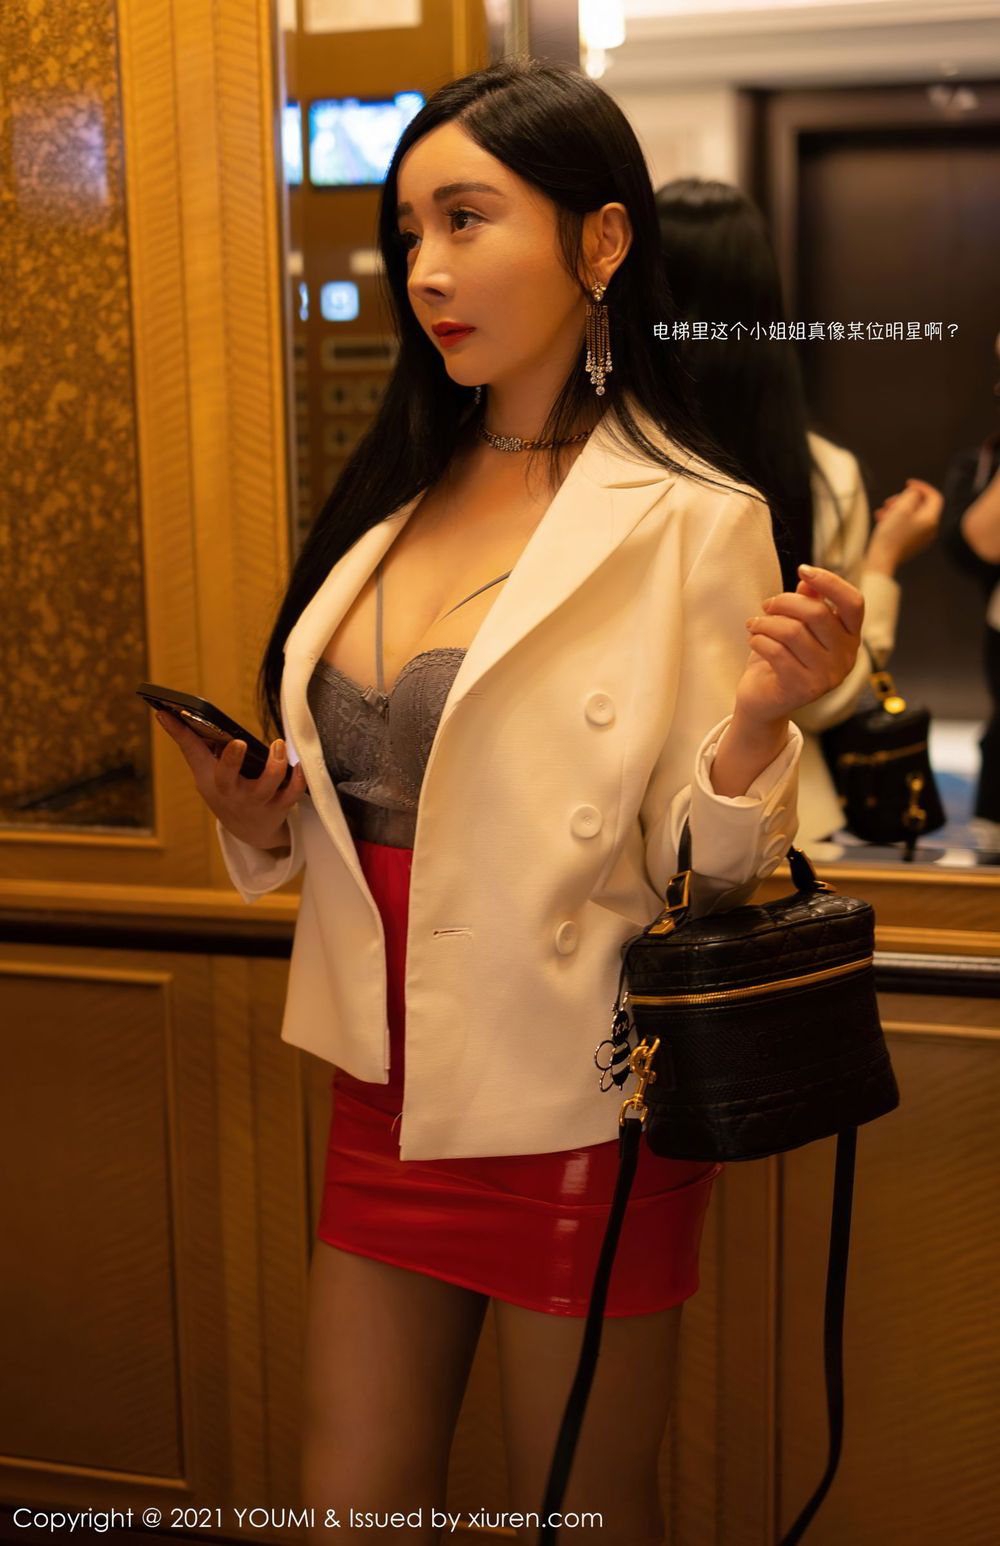 美女模特允爾 - 猩红皮裙与镂空内衣主题厦门旅拍